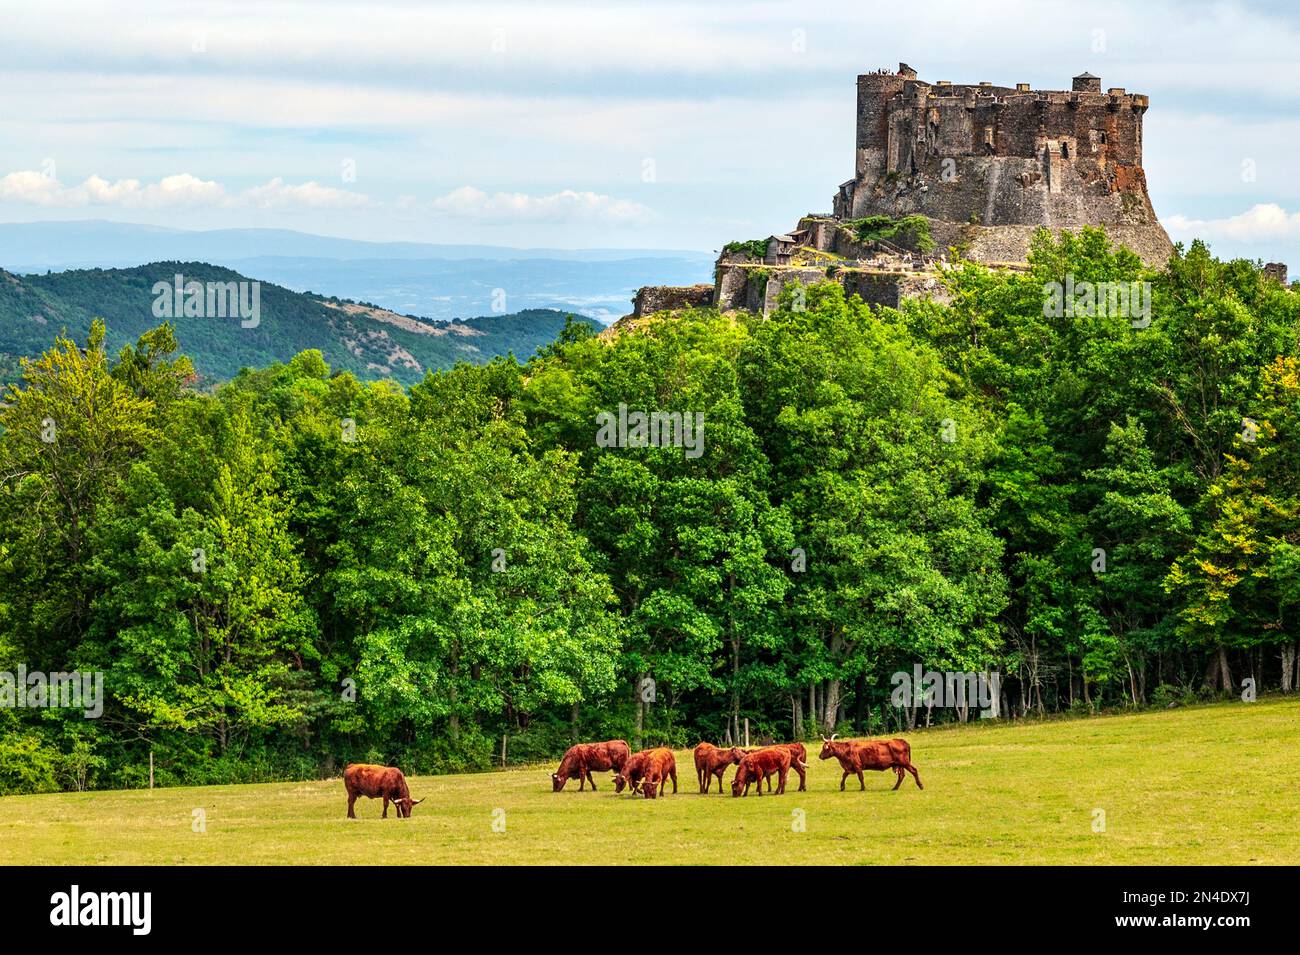 El castillo de Murol en Auvernia, Francia, descrito por Guy de Maupassant en su cuento 'Humble drame' Foto de stock